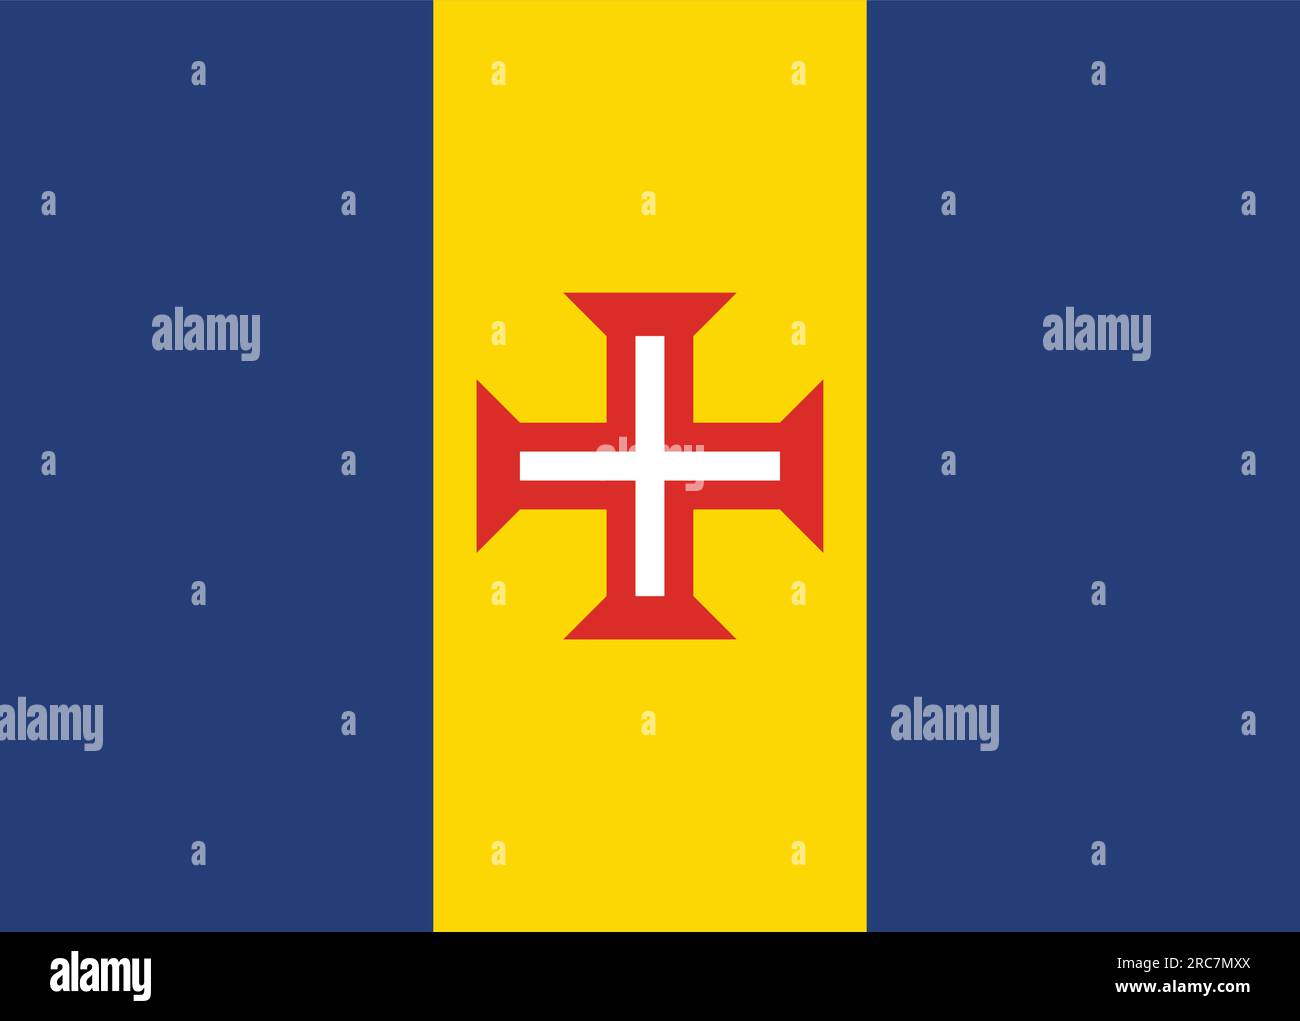 File:La bandiera dei pirati sventola.jpg - Wikimedia Commons